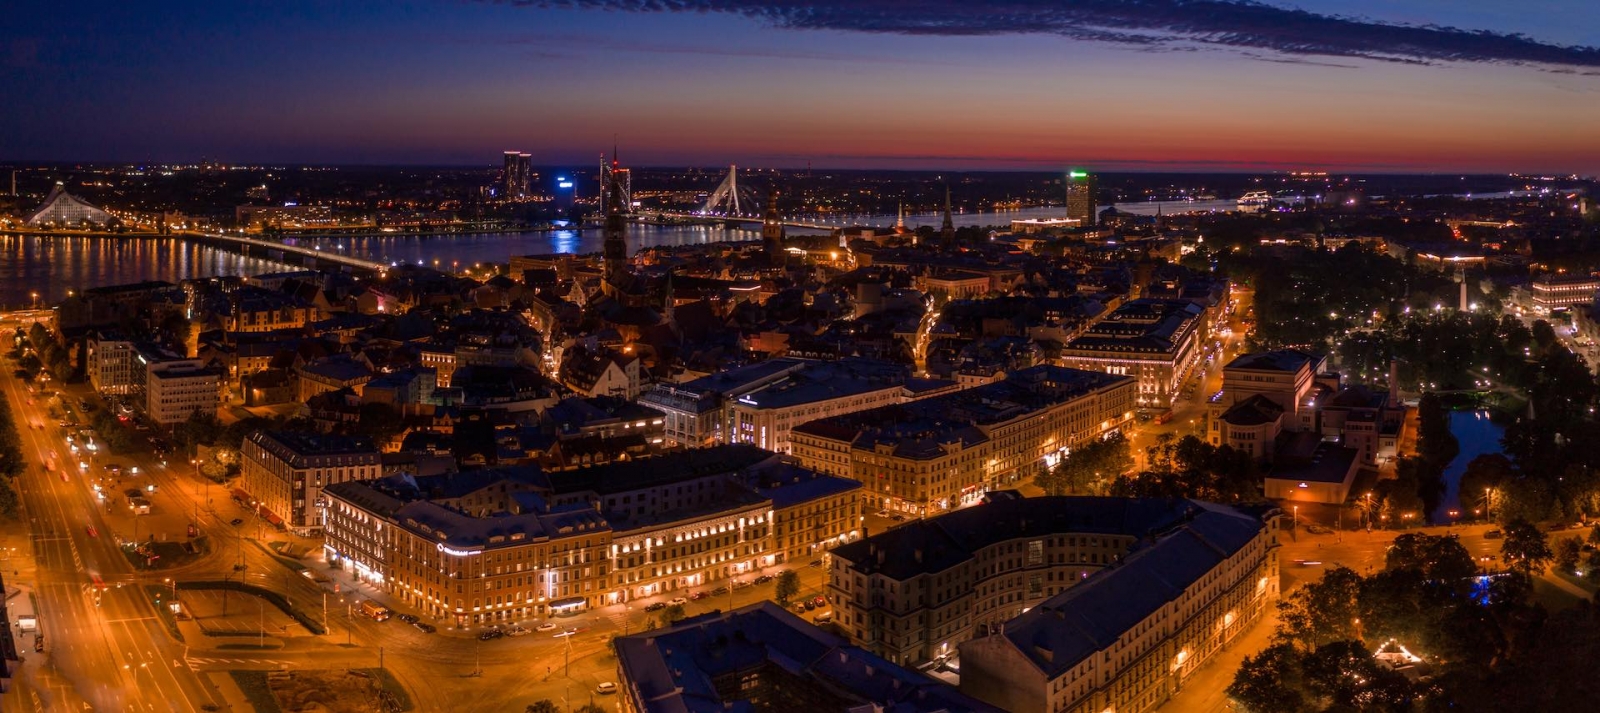 Vista panorámica de la ciudad nocturna de Riga al atardecer con la iglesia de San Pedro y el río Daugava en primer plano.  Atardecer mágico sobre la ciudad.